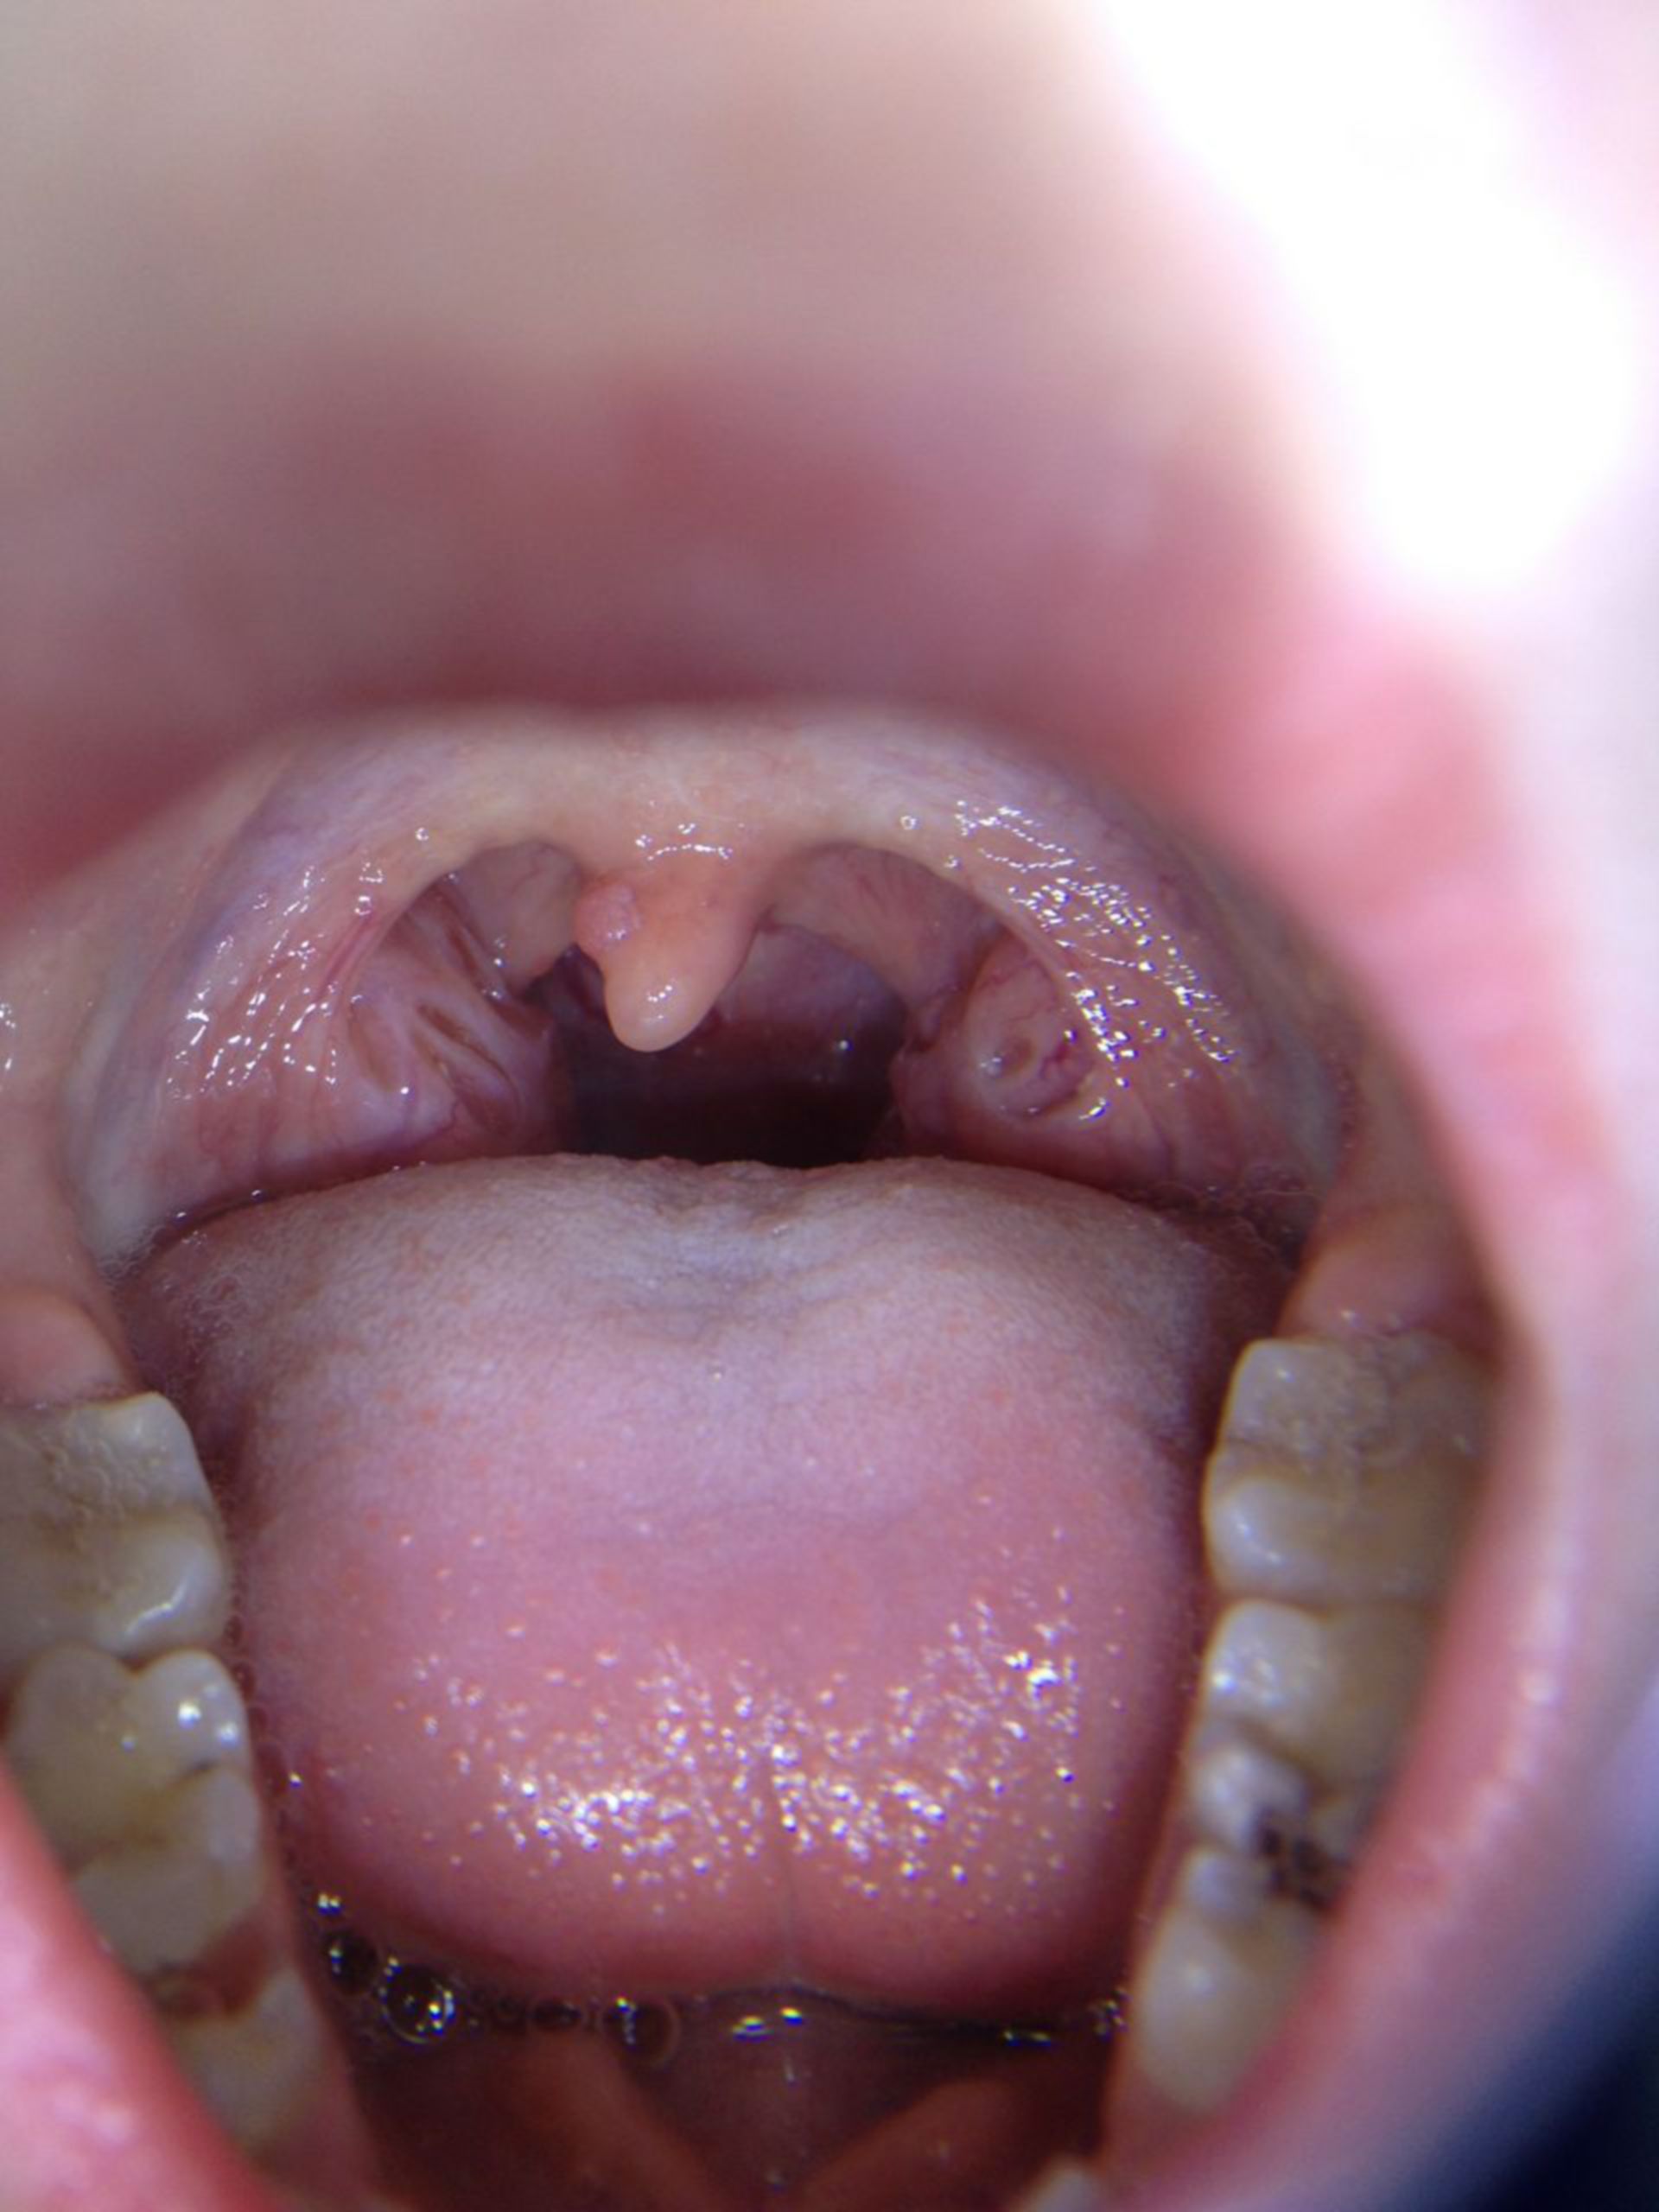 papilloma from uvula)